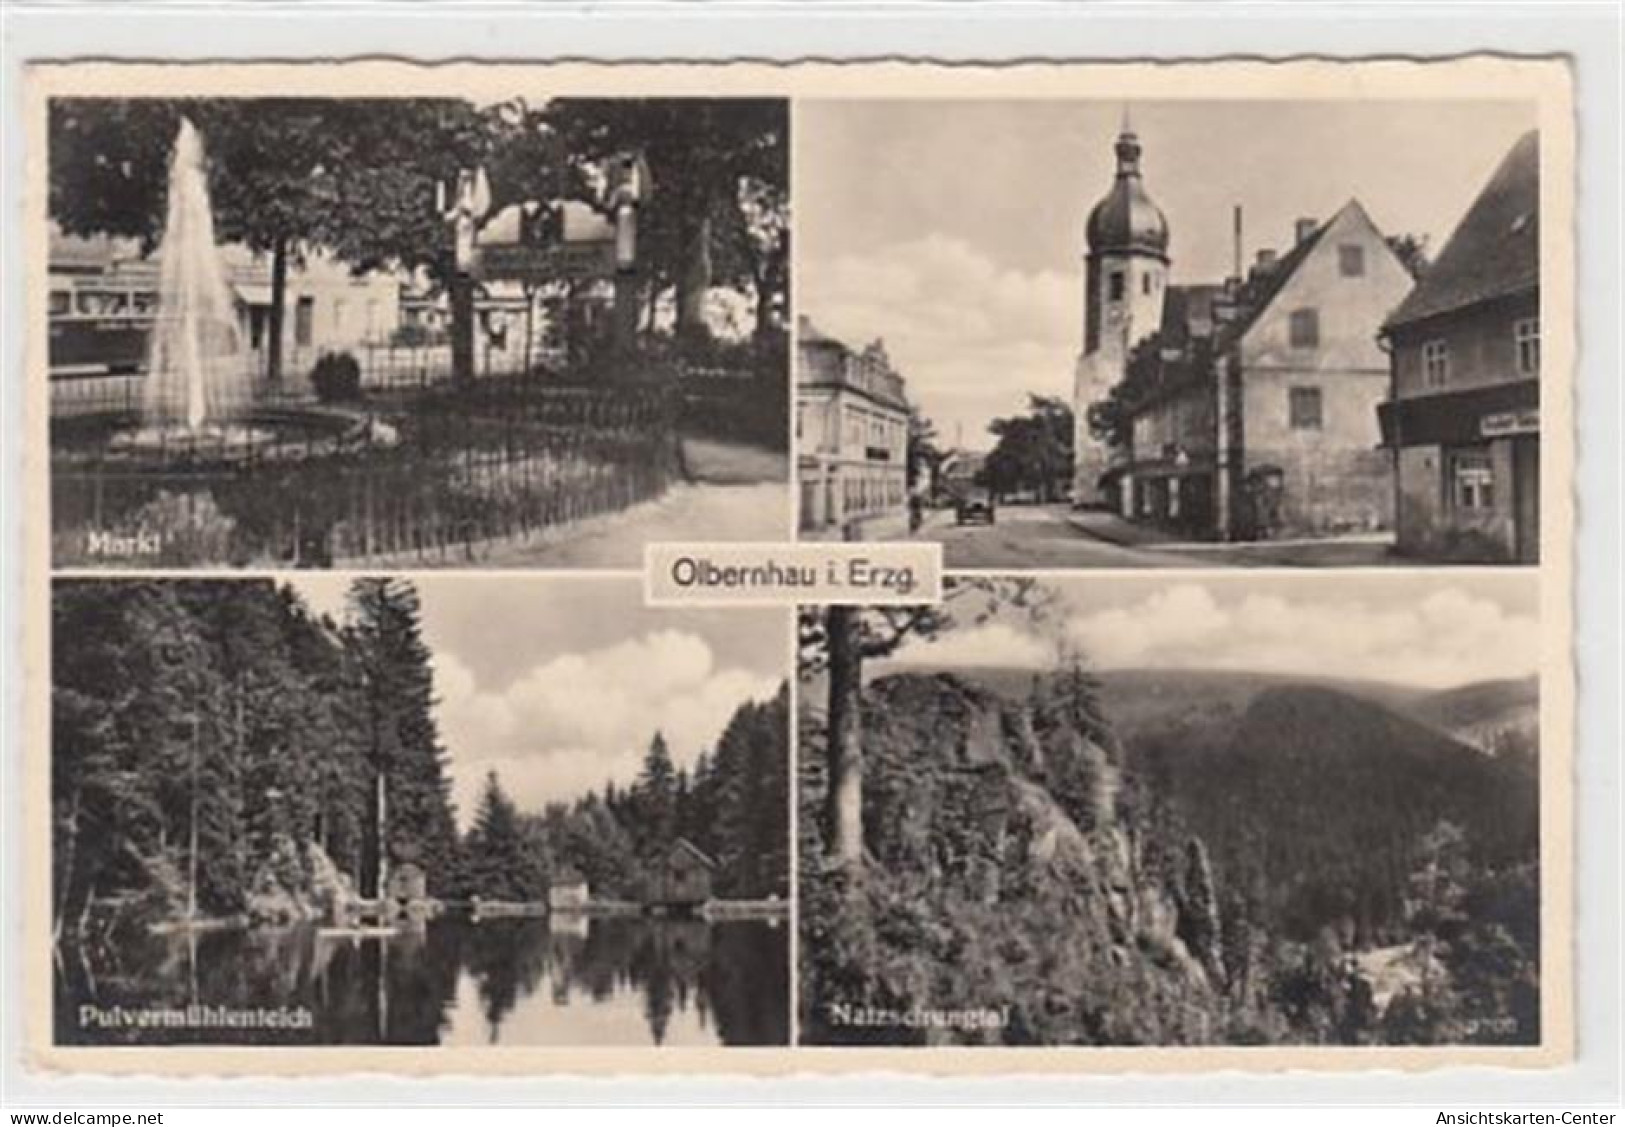 39084704 - Olbernhau Im Erzgebirge Mit Markt, Kirche U. Pulvermuehlenteich Gelaufen, 1939. Gute Erhaltung. - Olbernhau